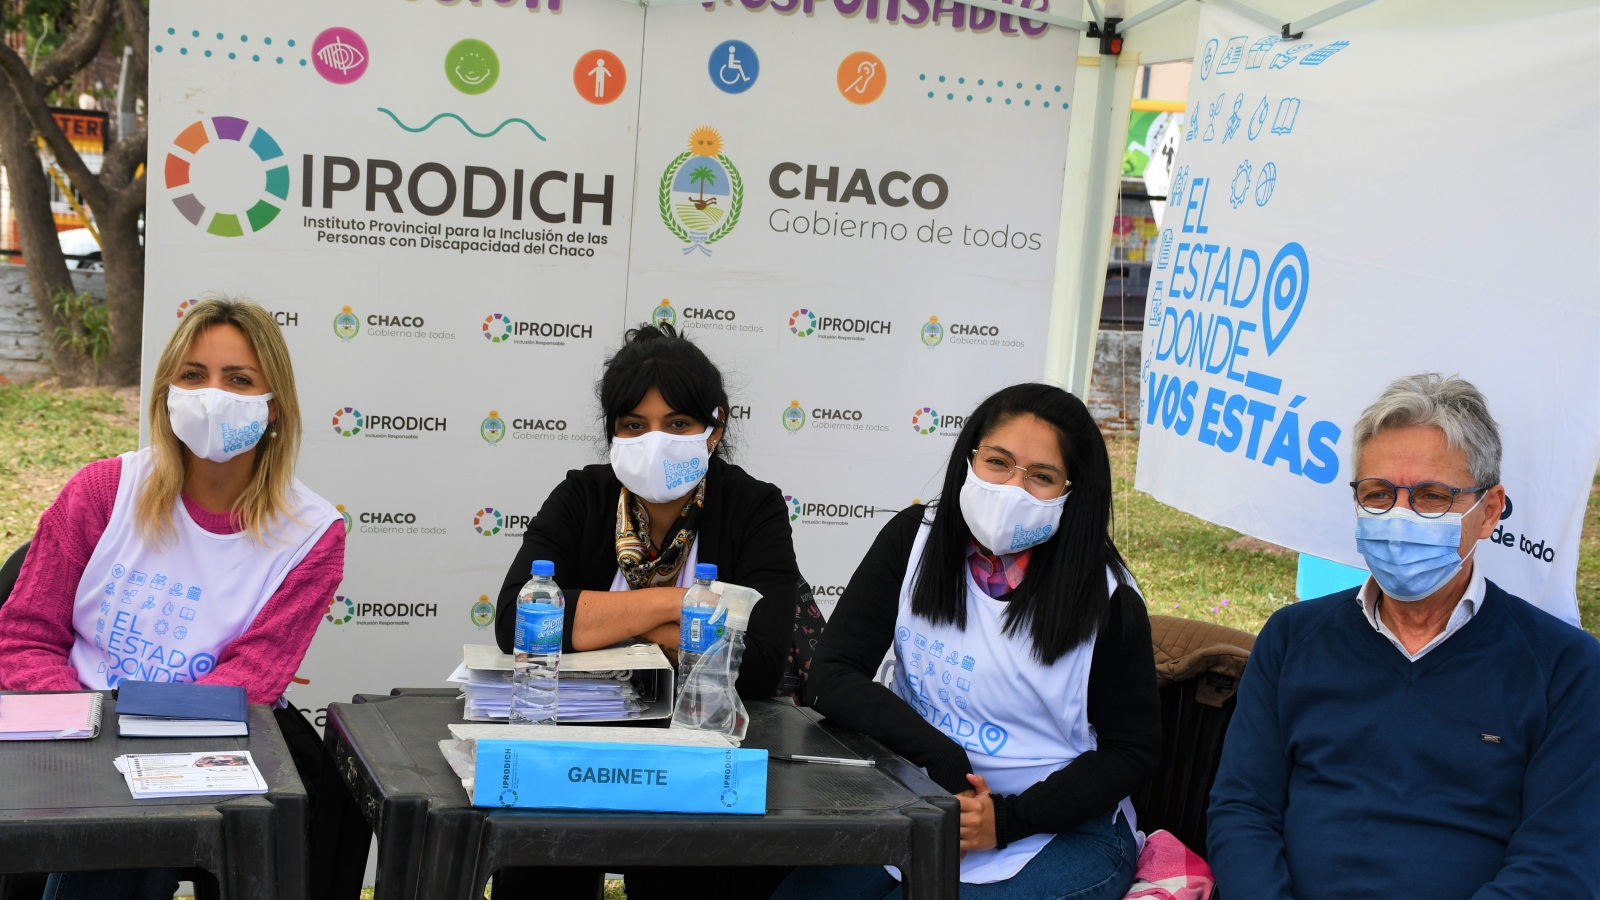 El presidente Lorenzo junto a trabajadoras del IPRODICH sonríen a cámara en el stand de El Estado donde vos estás